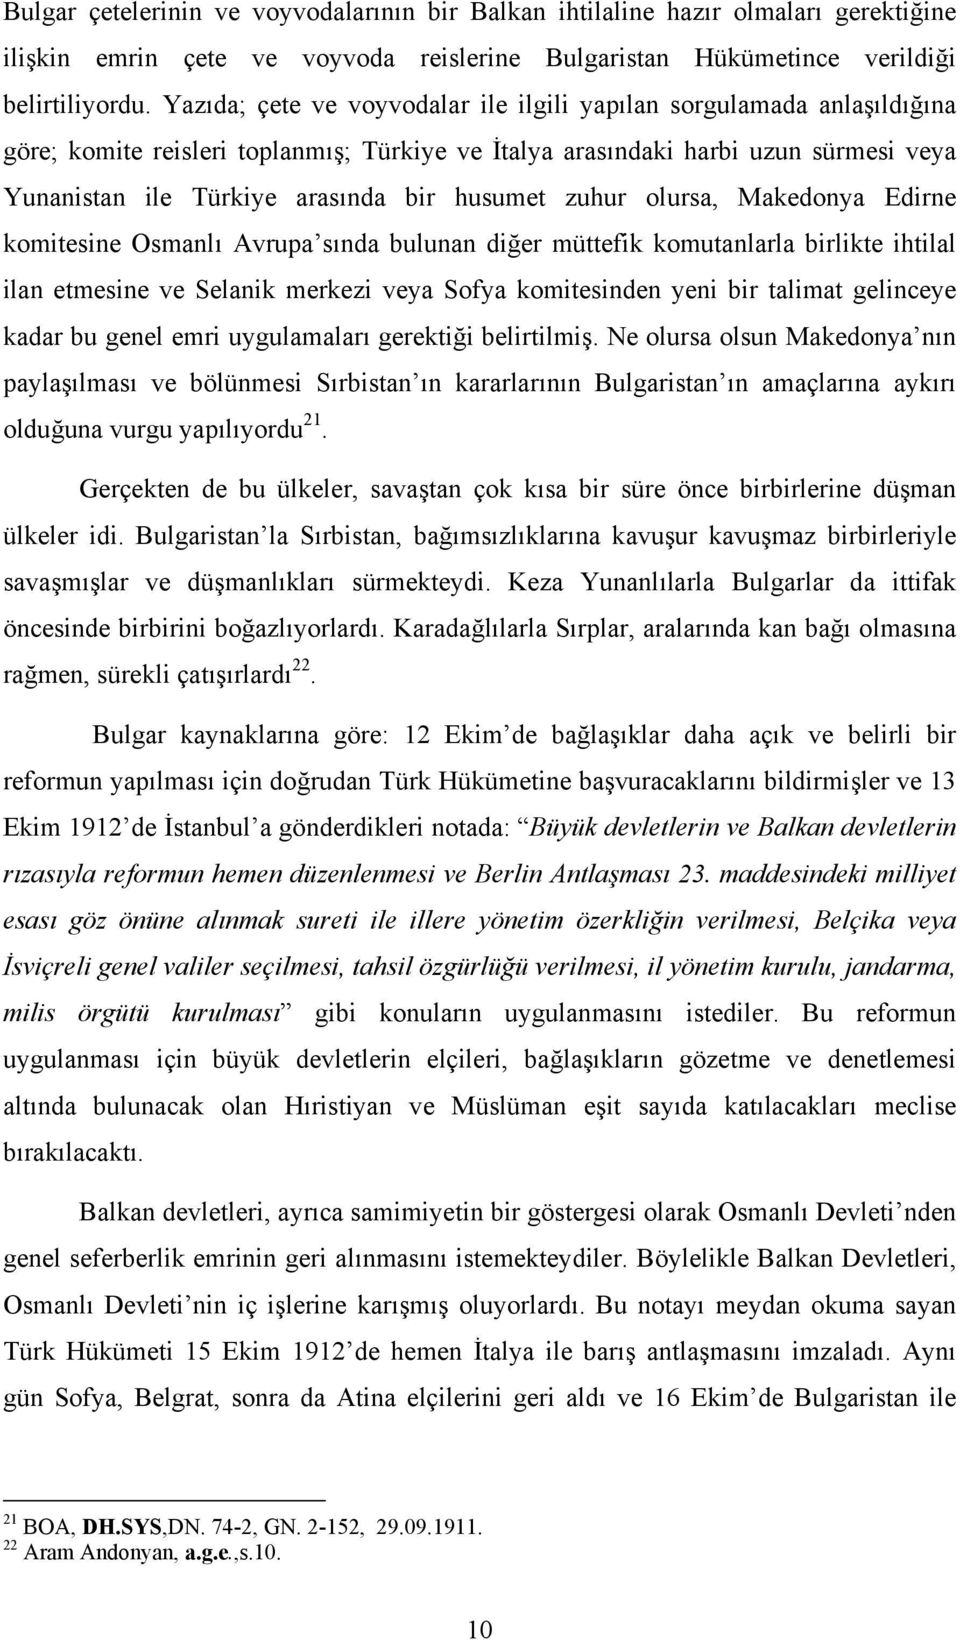 husumet zuhur olursa, Makedonya Edirne komitesine Osmanlı Avrupa sında bulunan diğer müttefik komutanlarla birlikte ihtilal ilan etmesine ve Selanik merkezi veya Sofya komitesinden yeni bir talimat